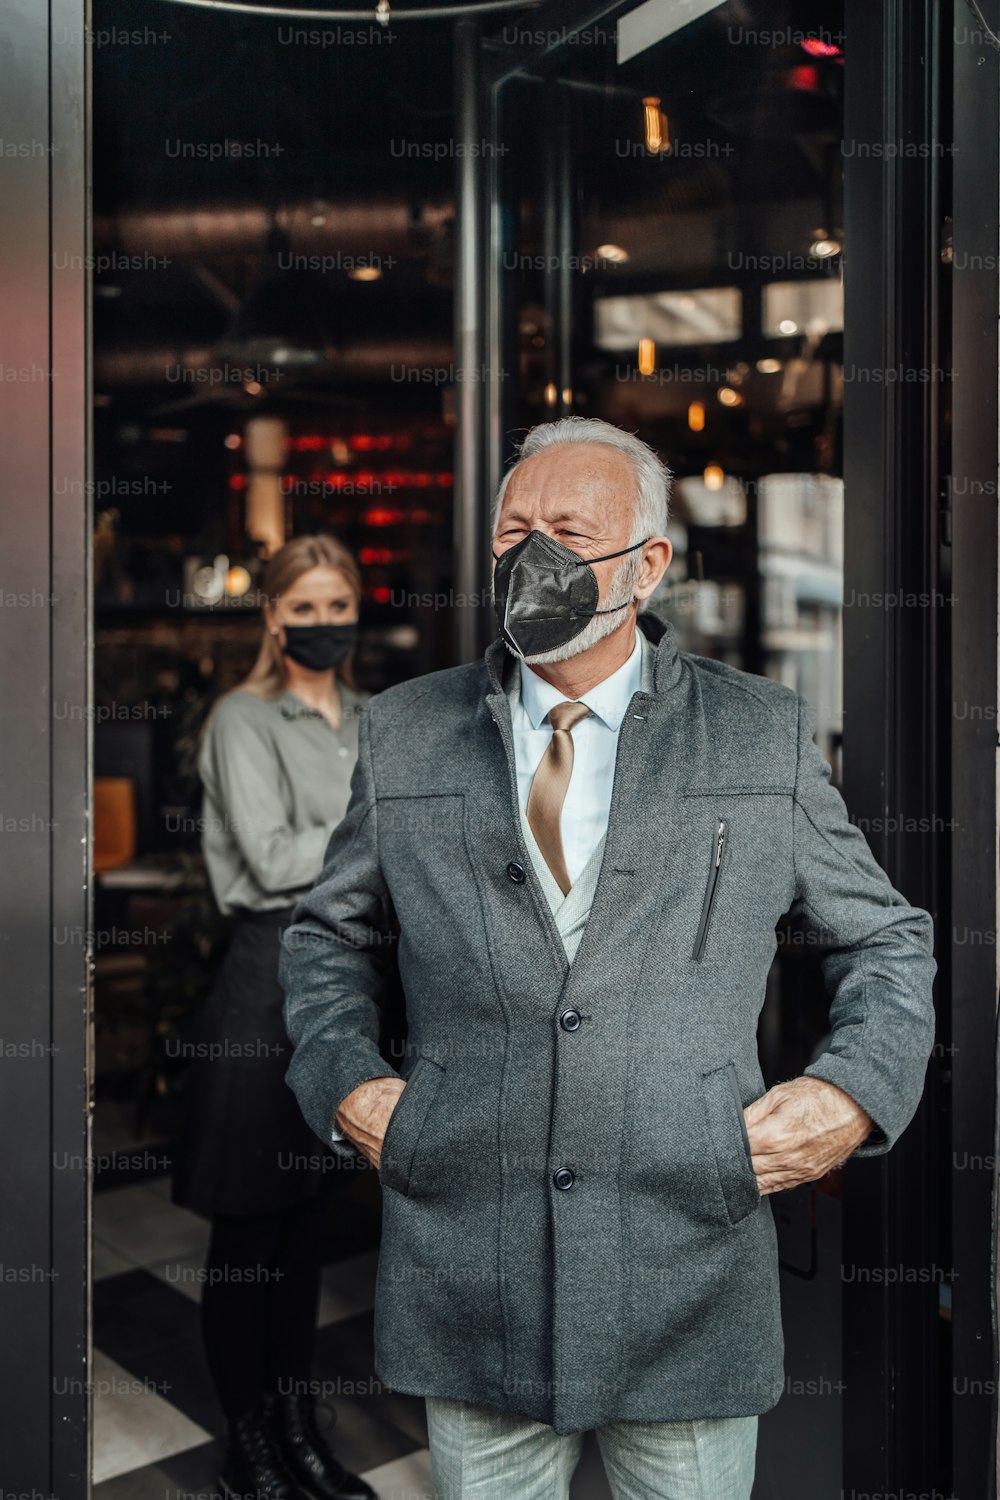 Un uomo d'affari anziano esce da un ristorante. La giovane cameriera lo saluta gentilmente. Indossano una maschera protettiva per il viso come protezione contro la pandemia di virus.